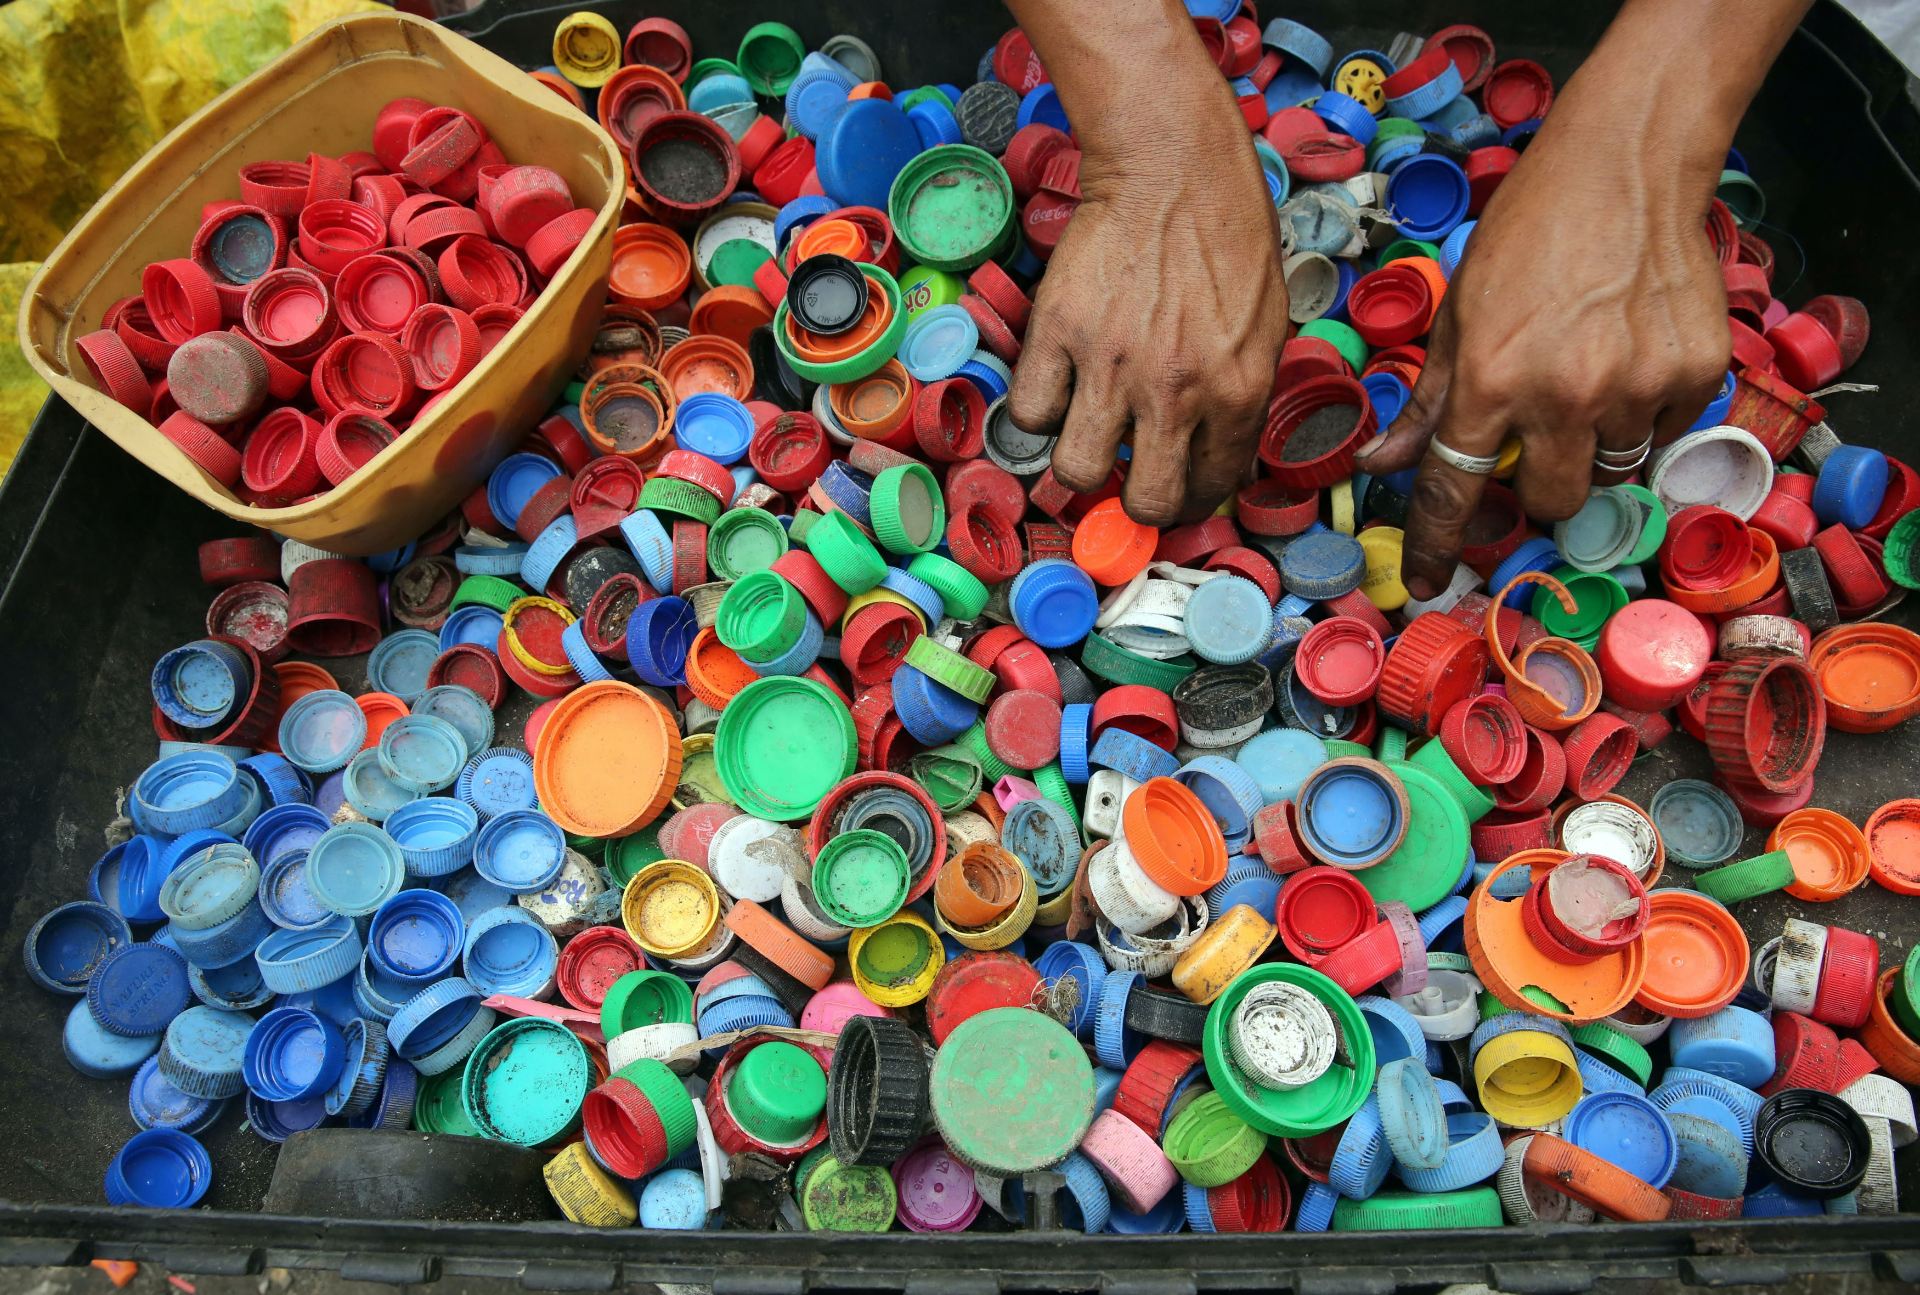 A tray full of hundreds of bottle tops